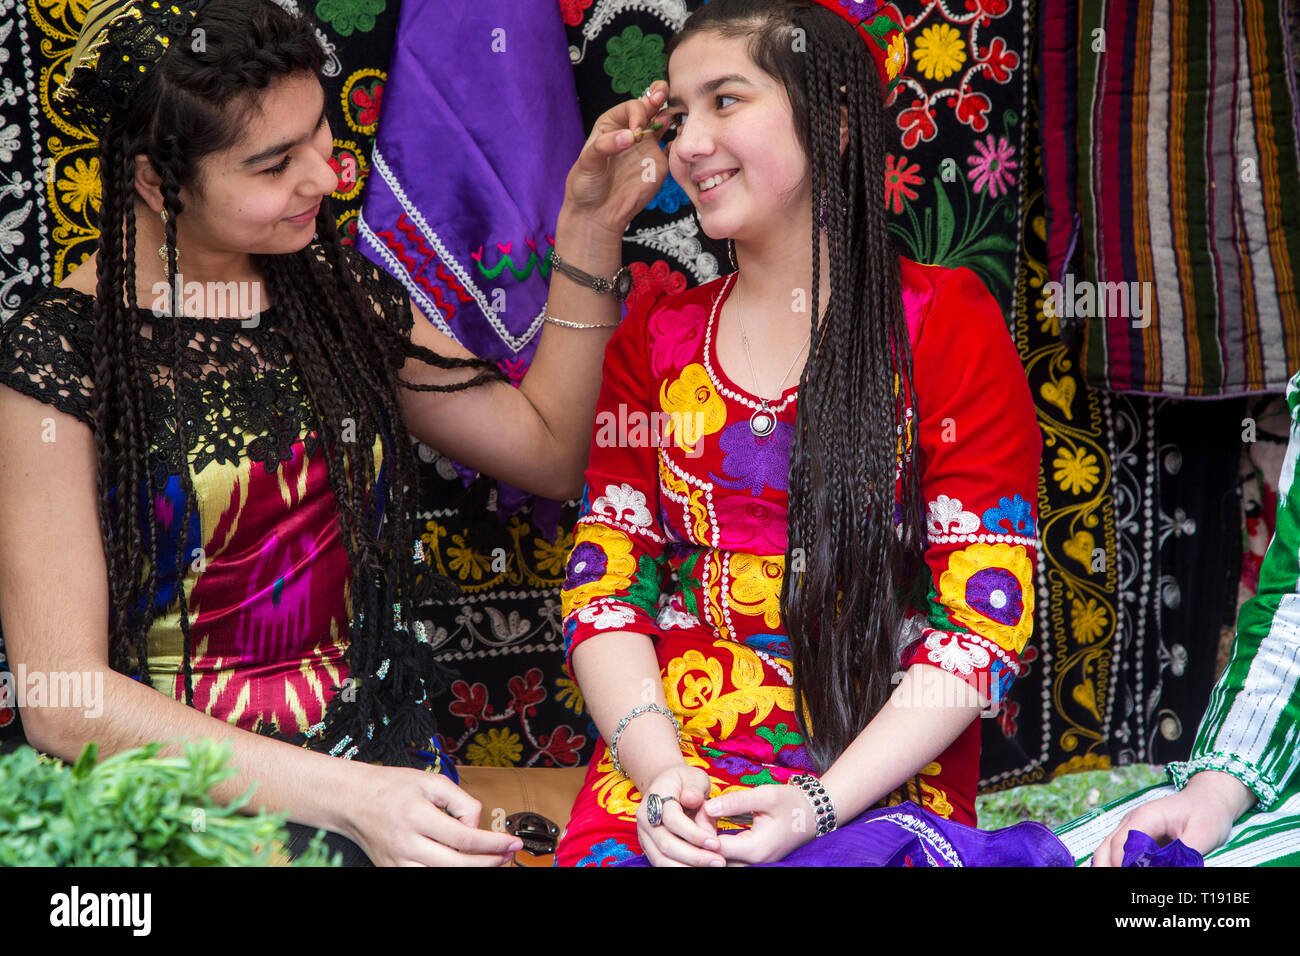 Таджикские полно. Культура Таджикистана. Таджикские девушки. Таджикские платья. Узбекские национальные платья.